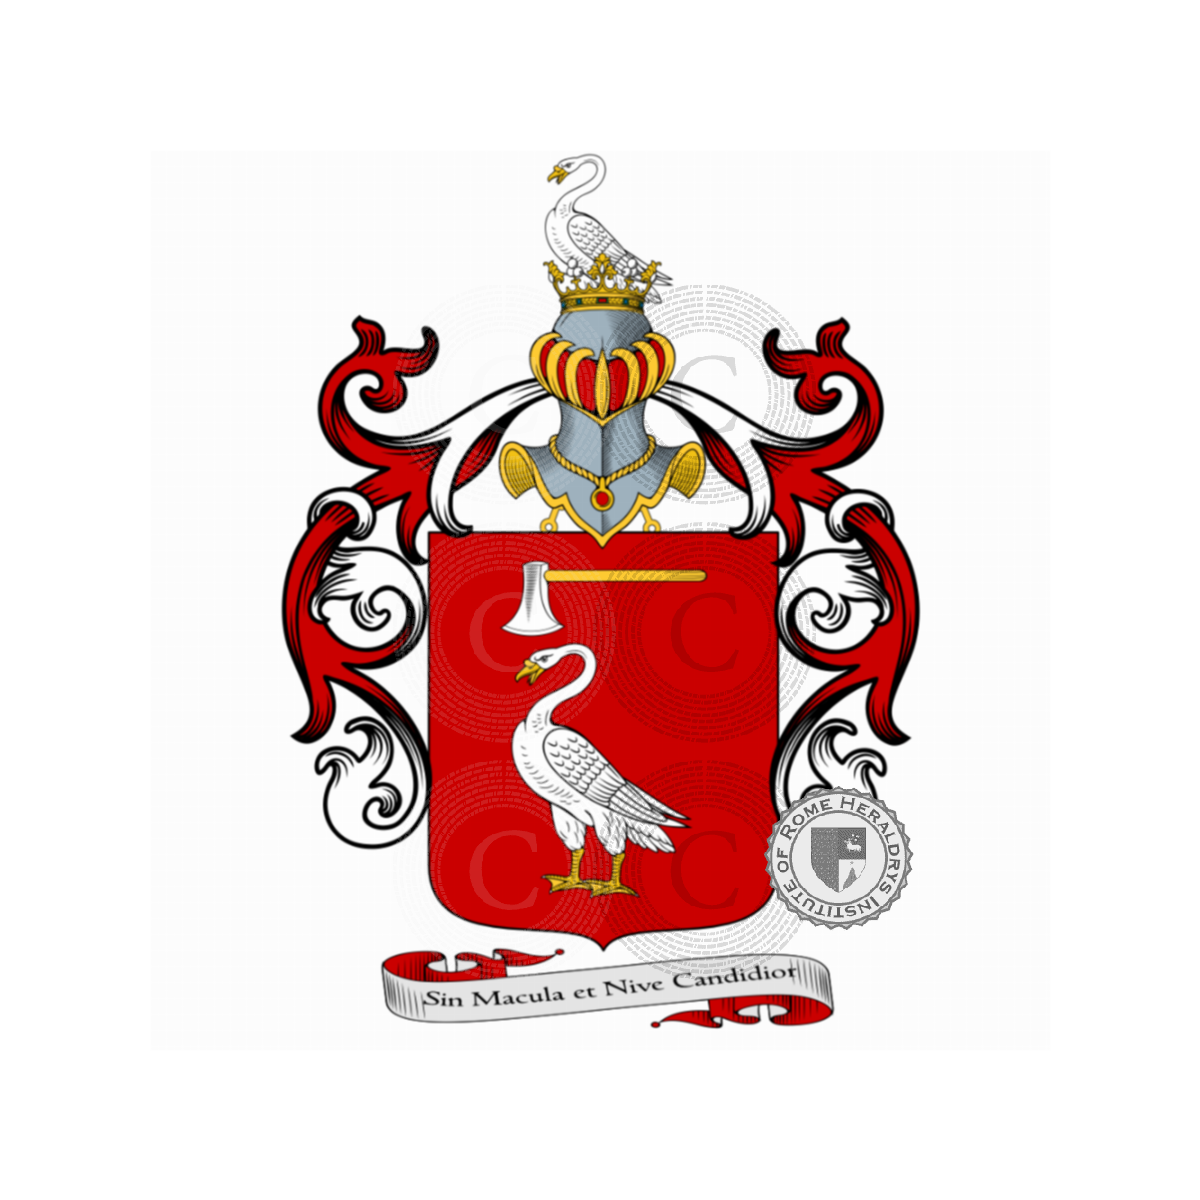 Wappen der FamilieCarcano, Carcano d'Arzago